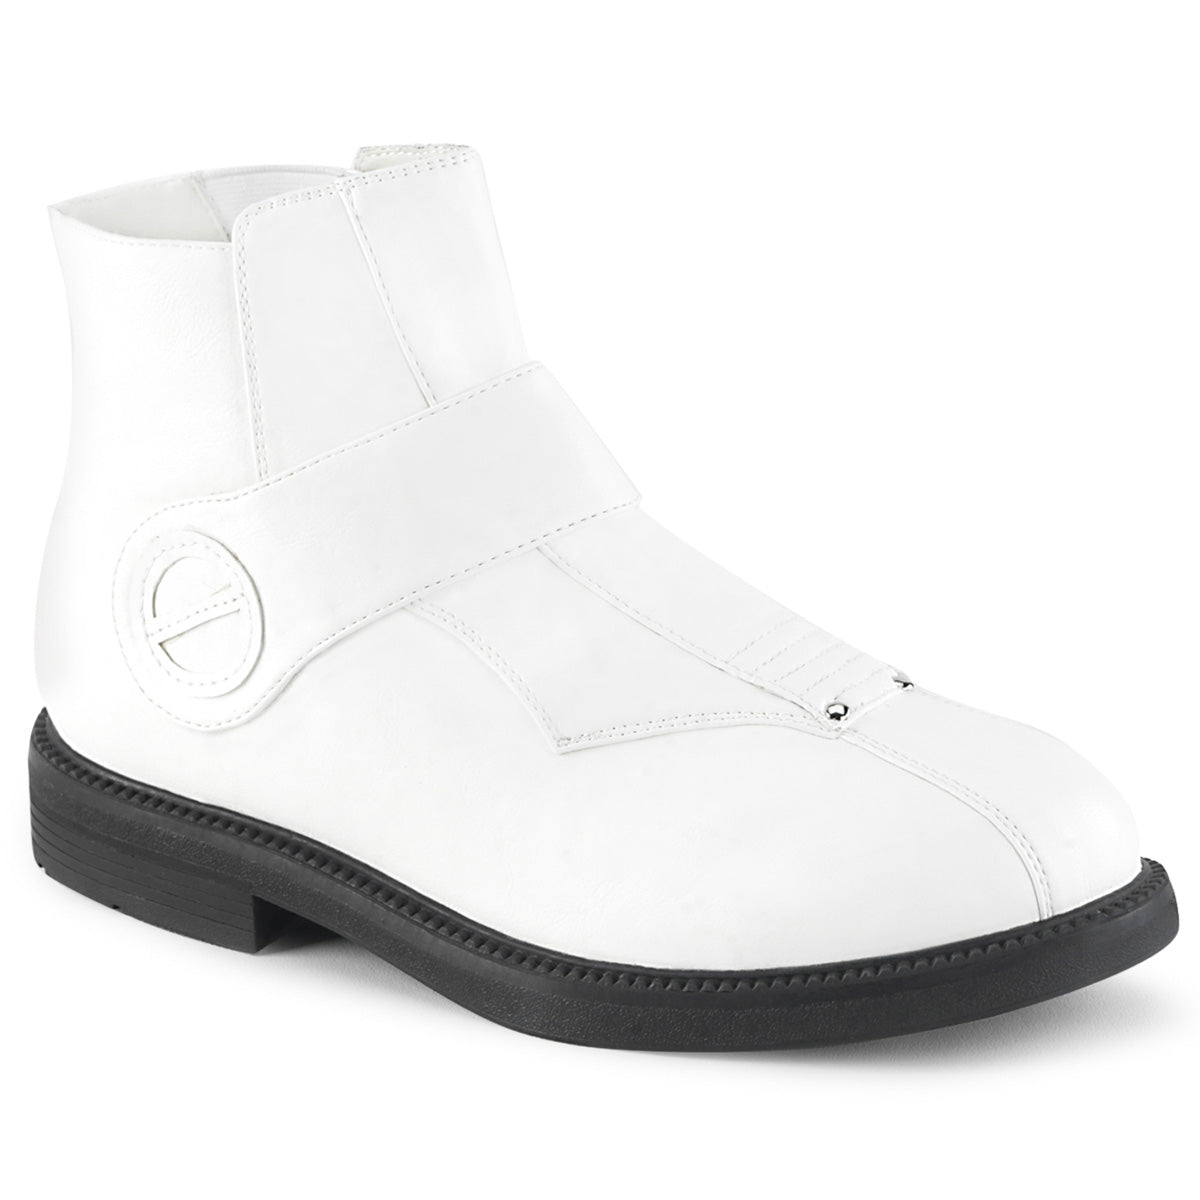 Funtasma Mens Boots CLONE-102 White Faux Leather